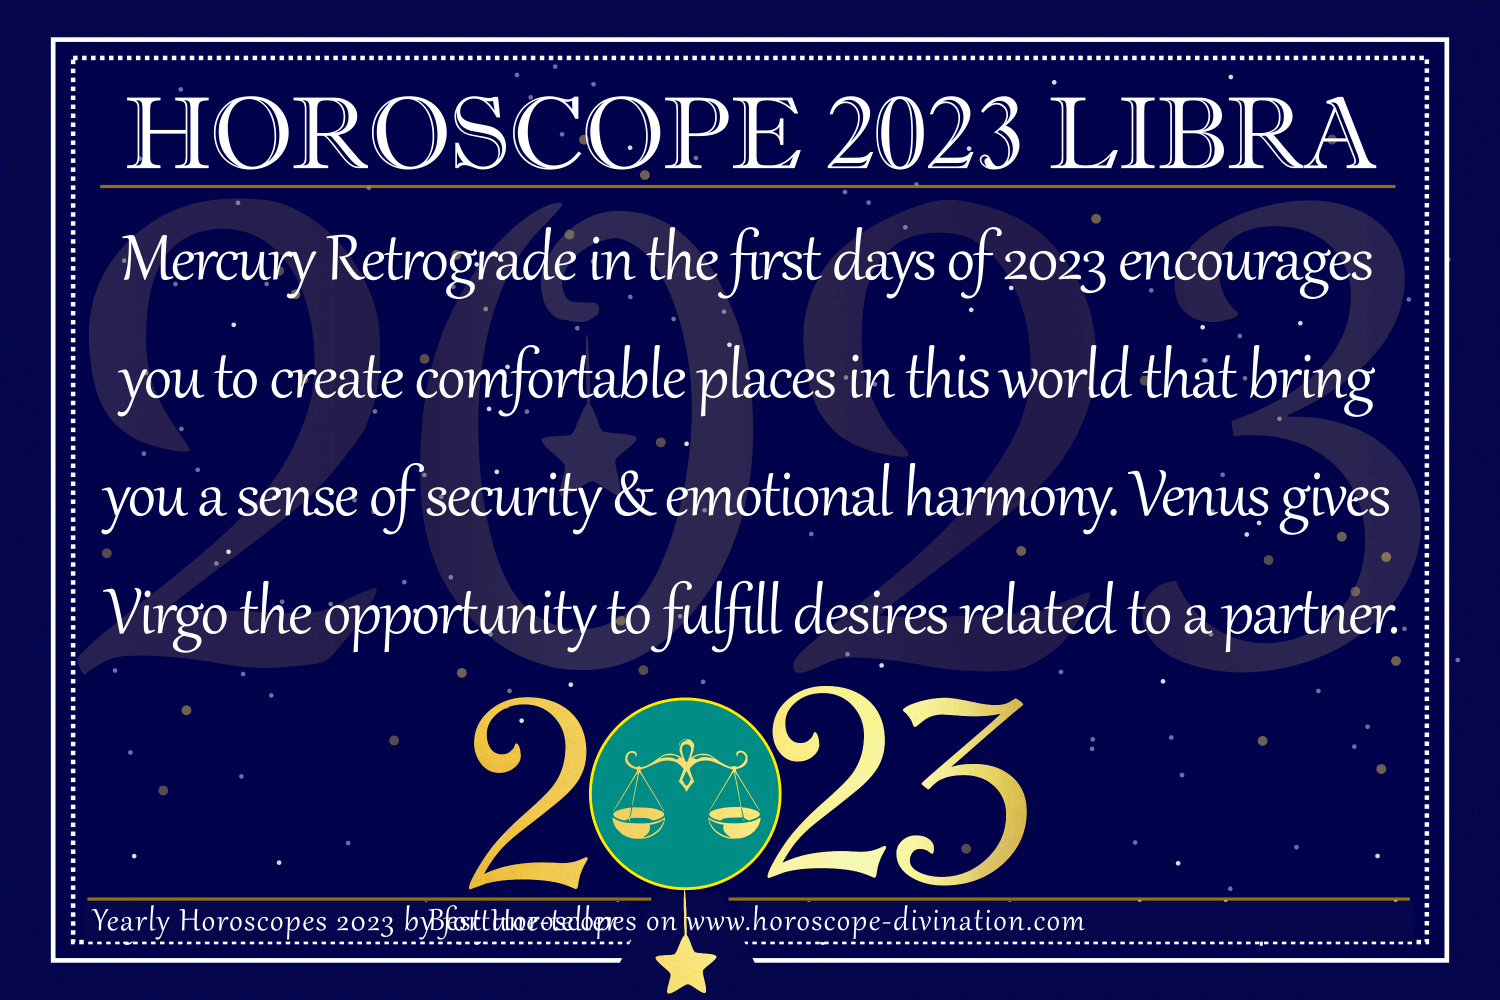 virgo 2023 yearly horoscope